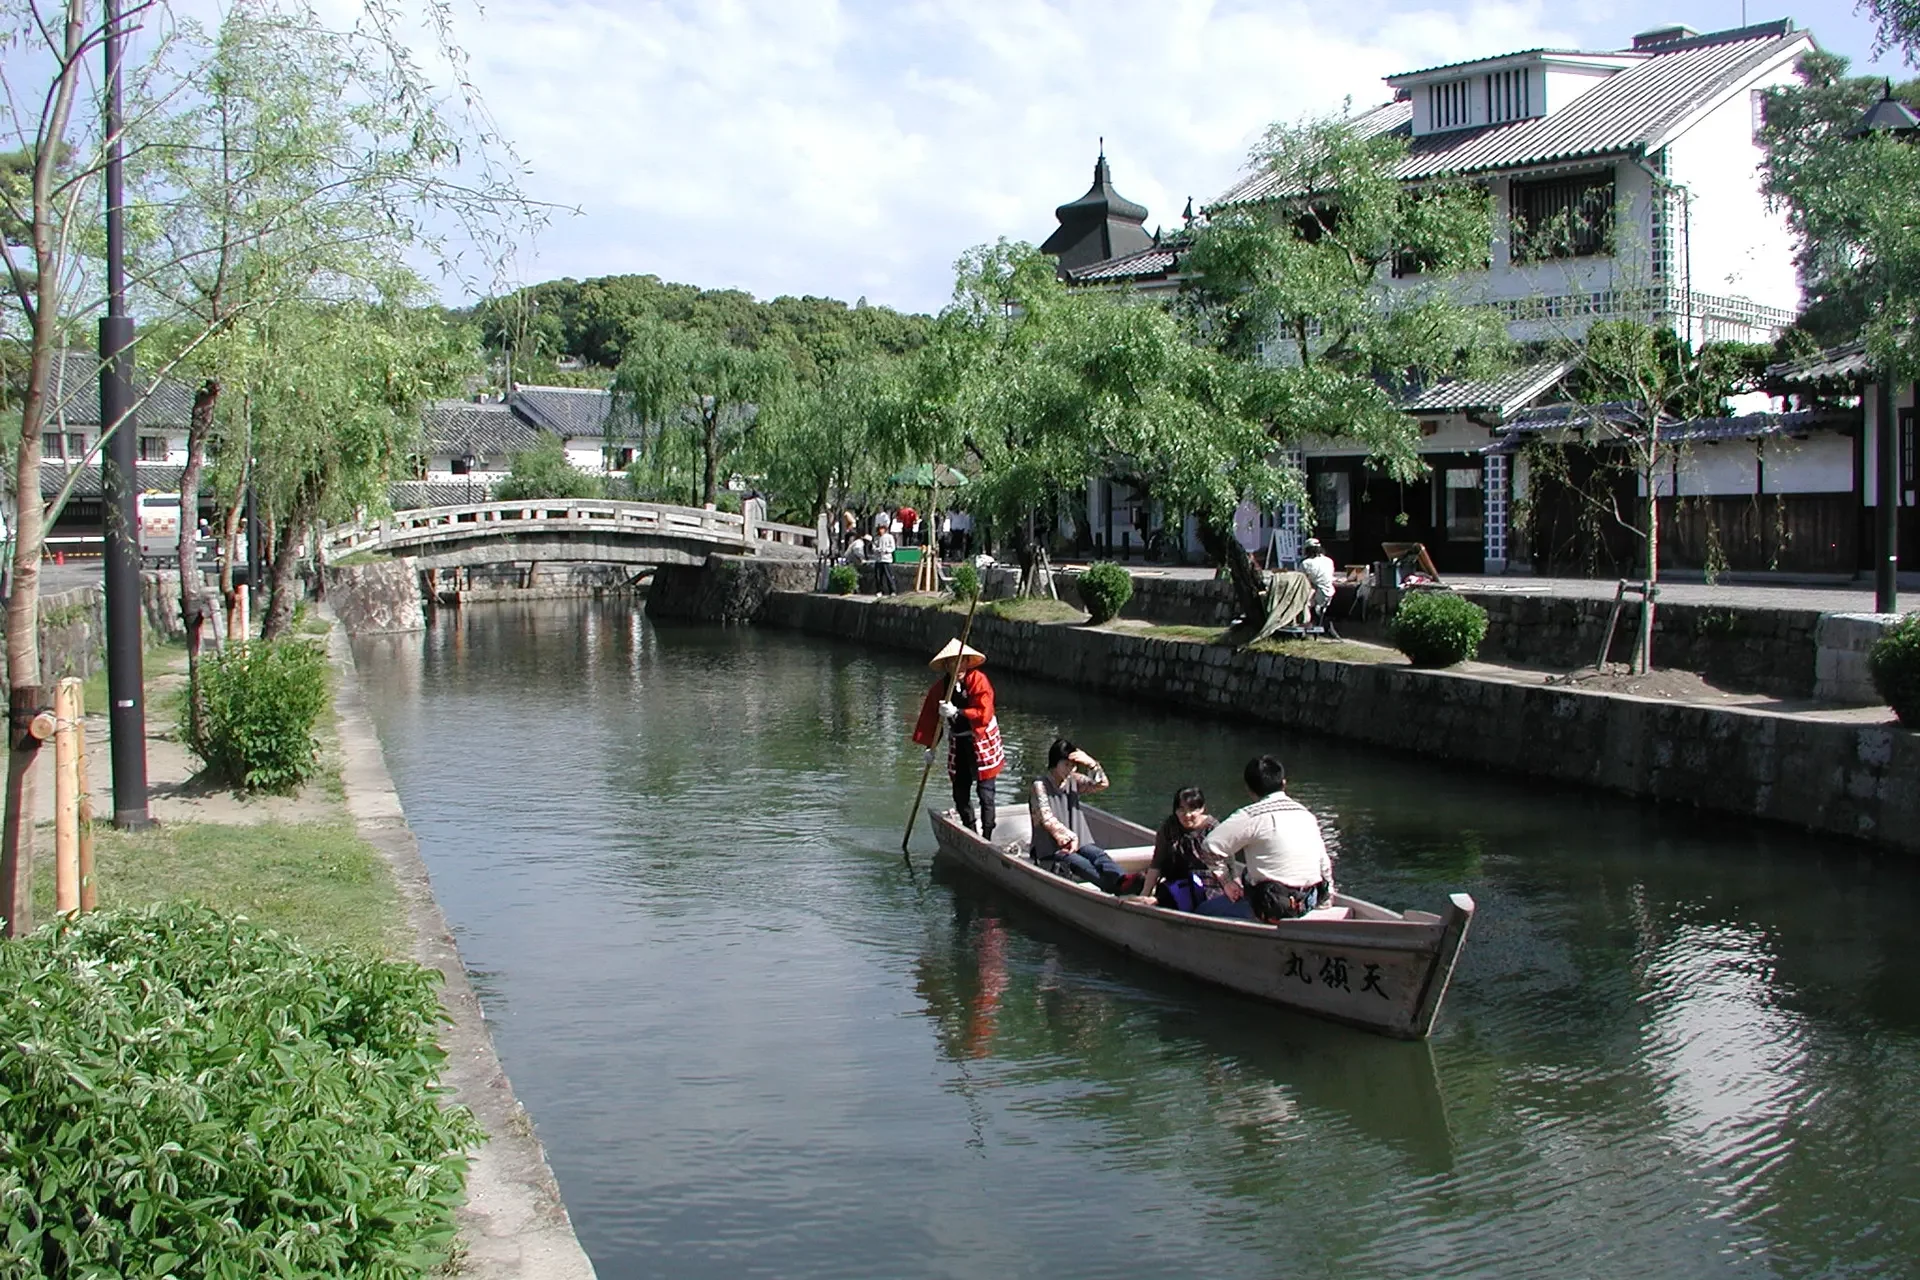 Gondelboot auf einem Kanal in Japan